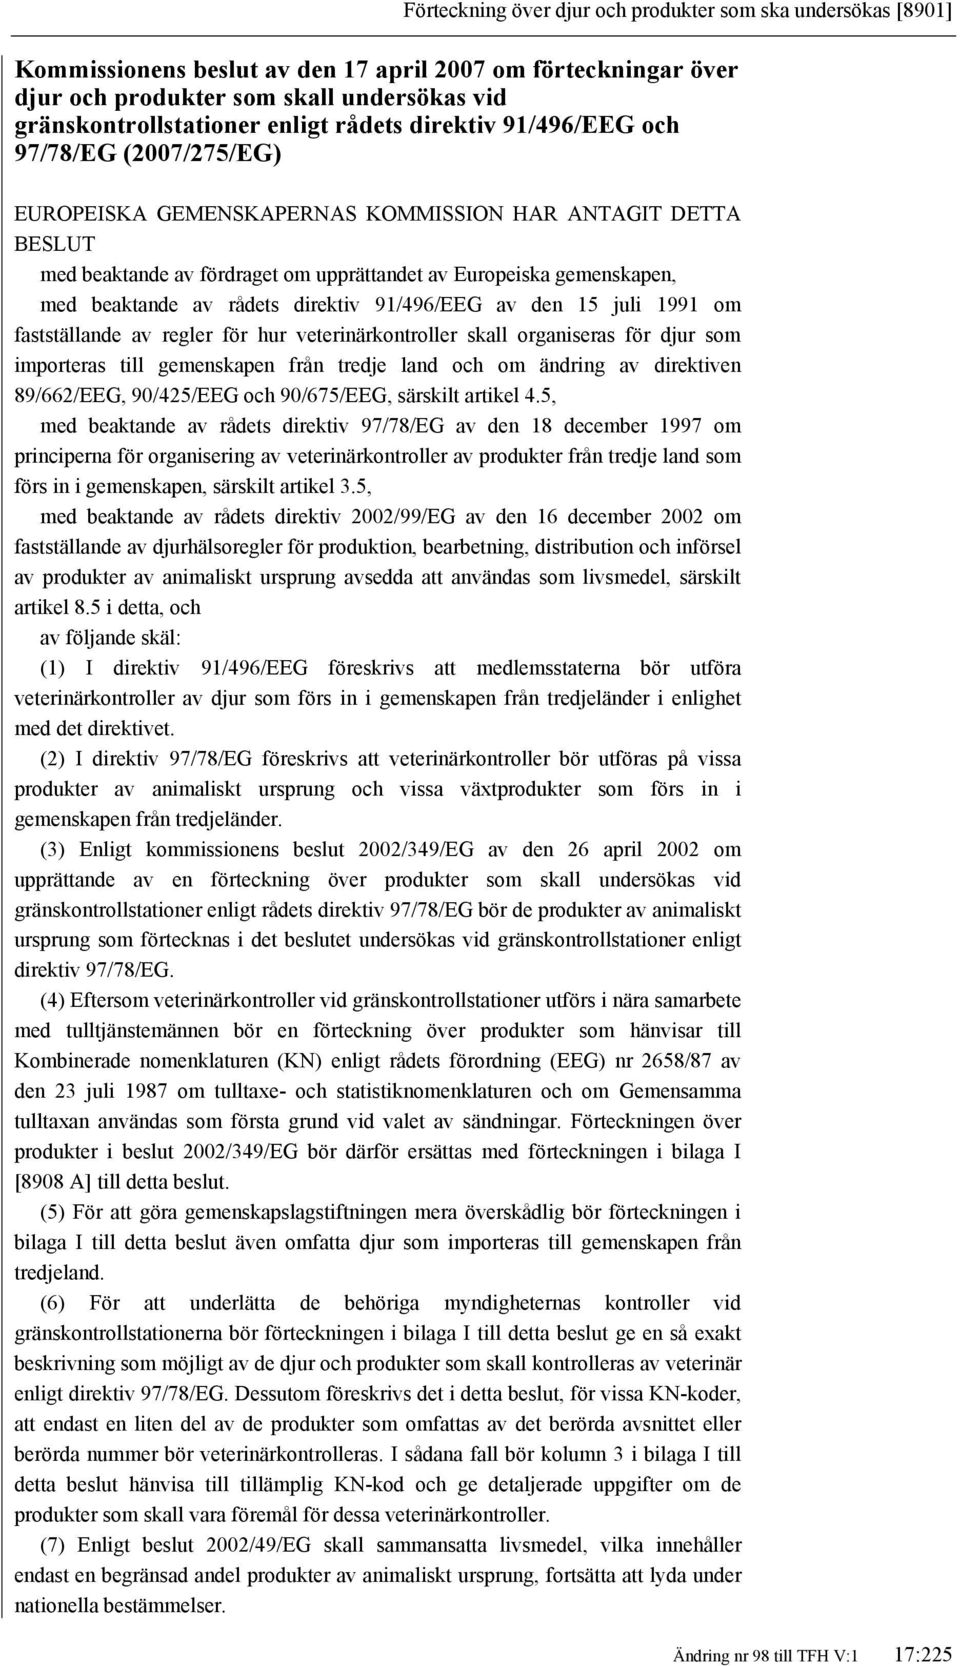 av rådets direktiv 91/496/EEG av den 15 juli 1991 om fastställande av regler för hur veterinärkontroller skall organiseras för djur som importeras till gemenskapen från tredje land och om ändring av